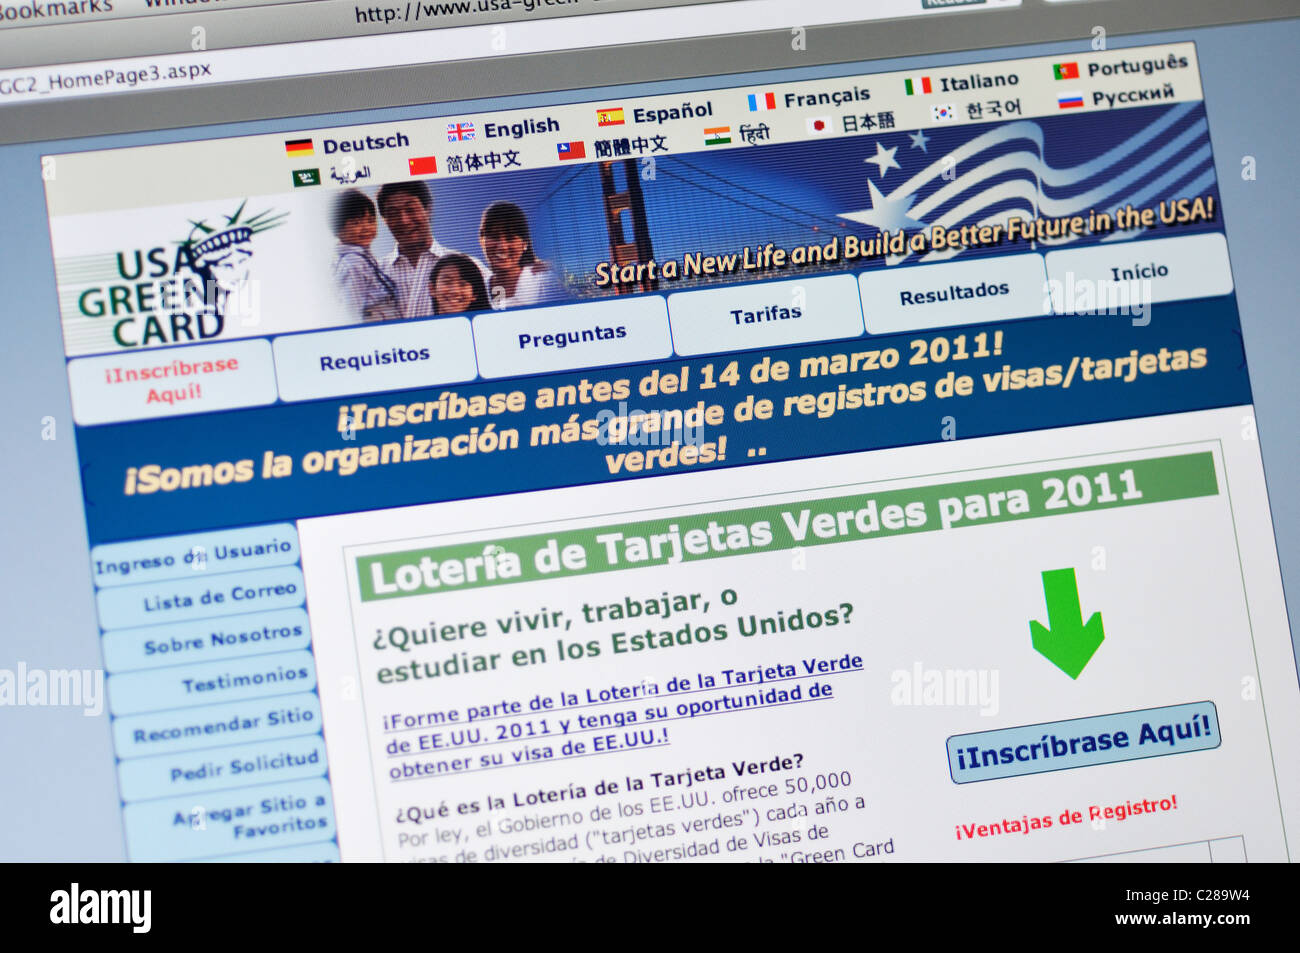 USA Green Card Lotterie Website - Spanisch Stockfoto